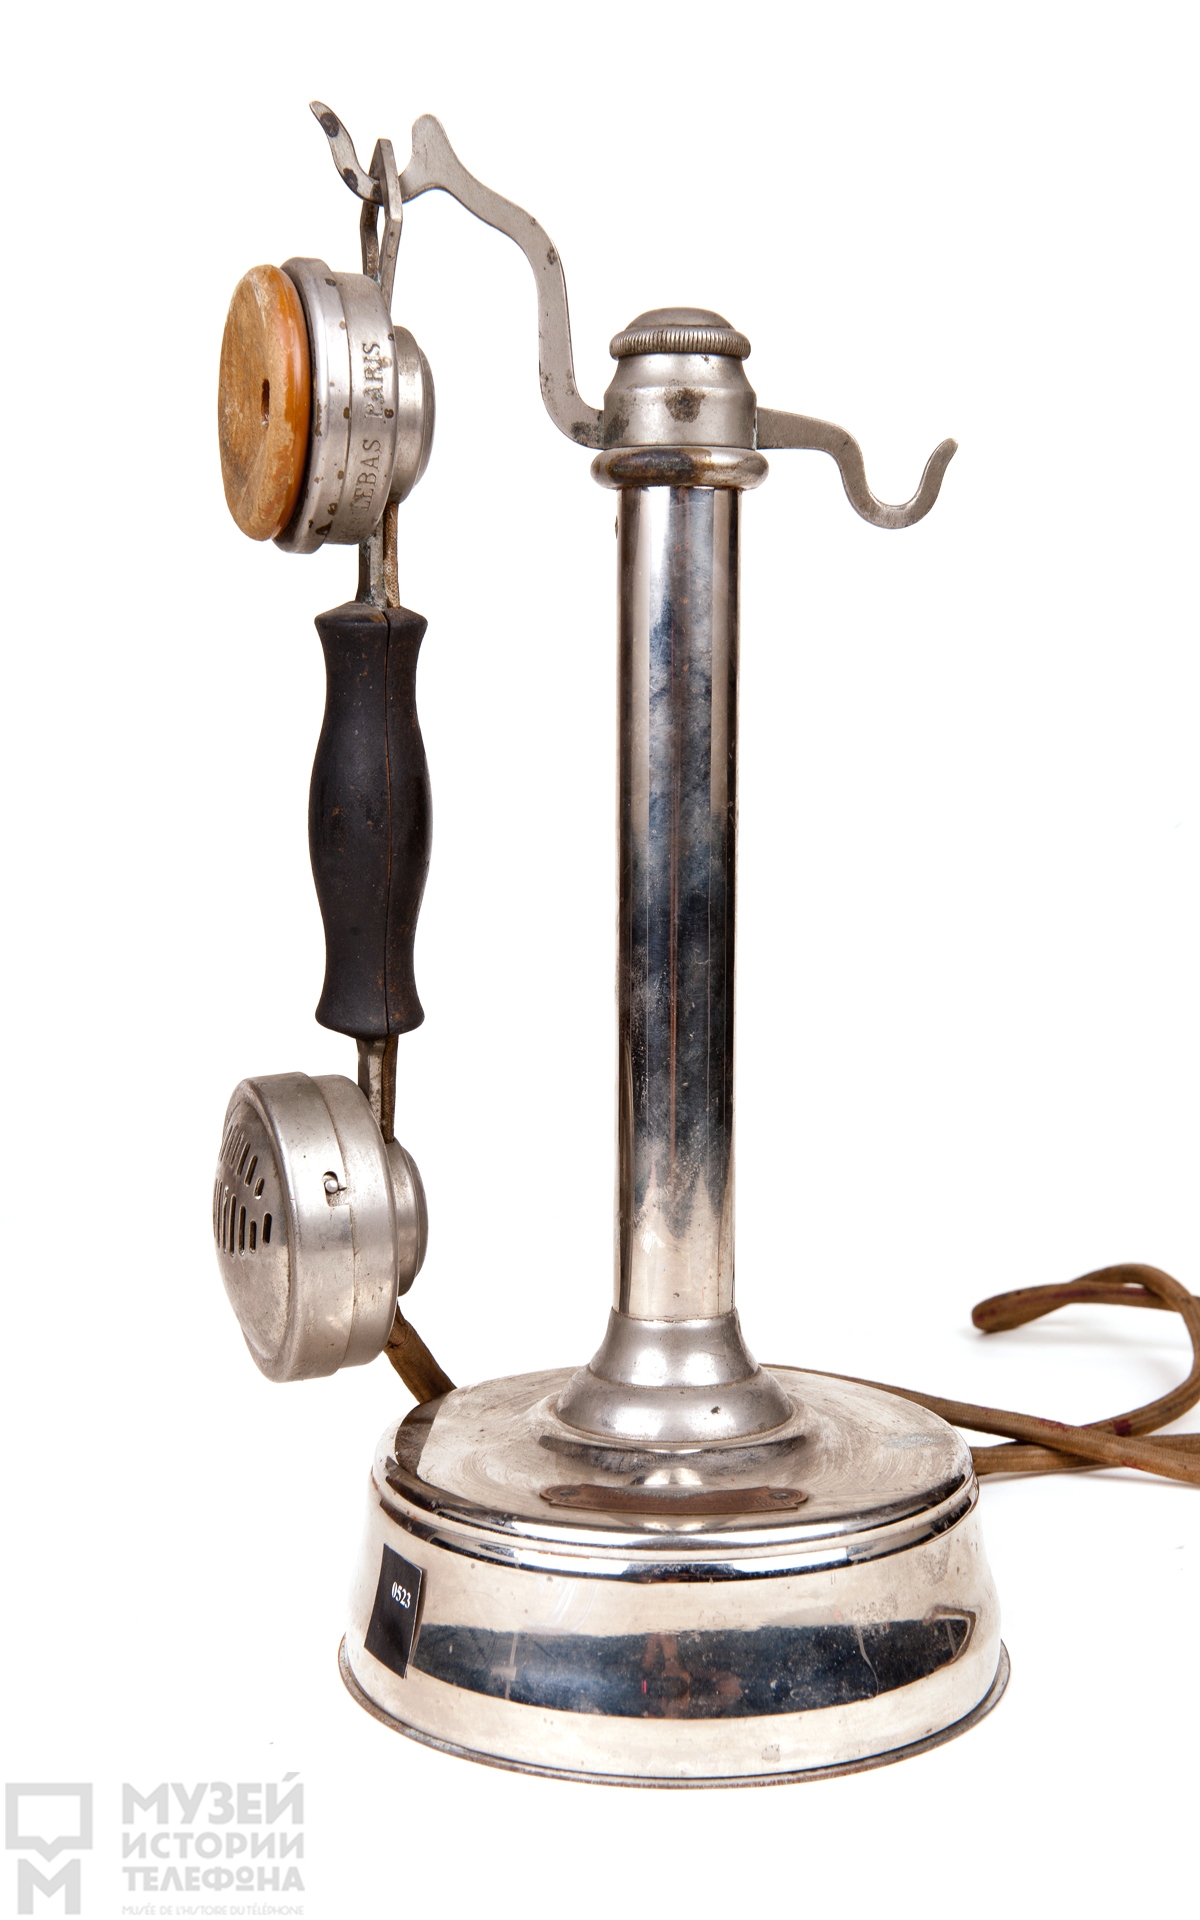 Телефонный аппарат-стойка в металлическом корпусе с микротелефонной трубкой и дополнительным наушником